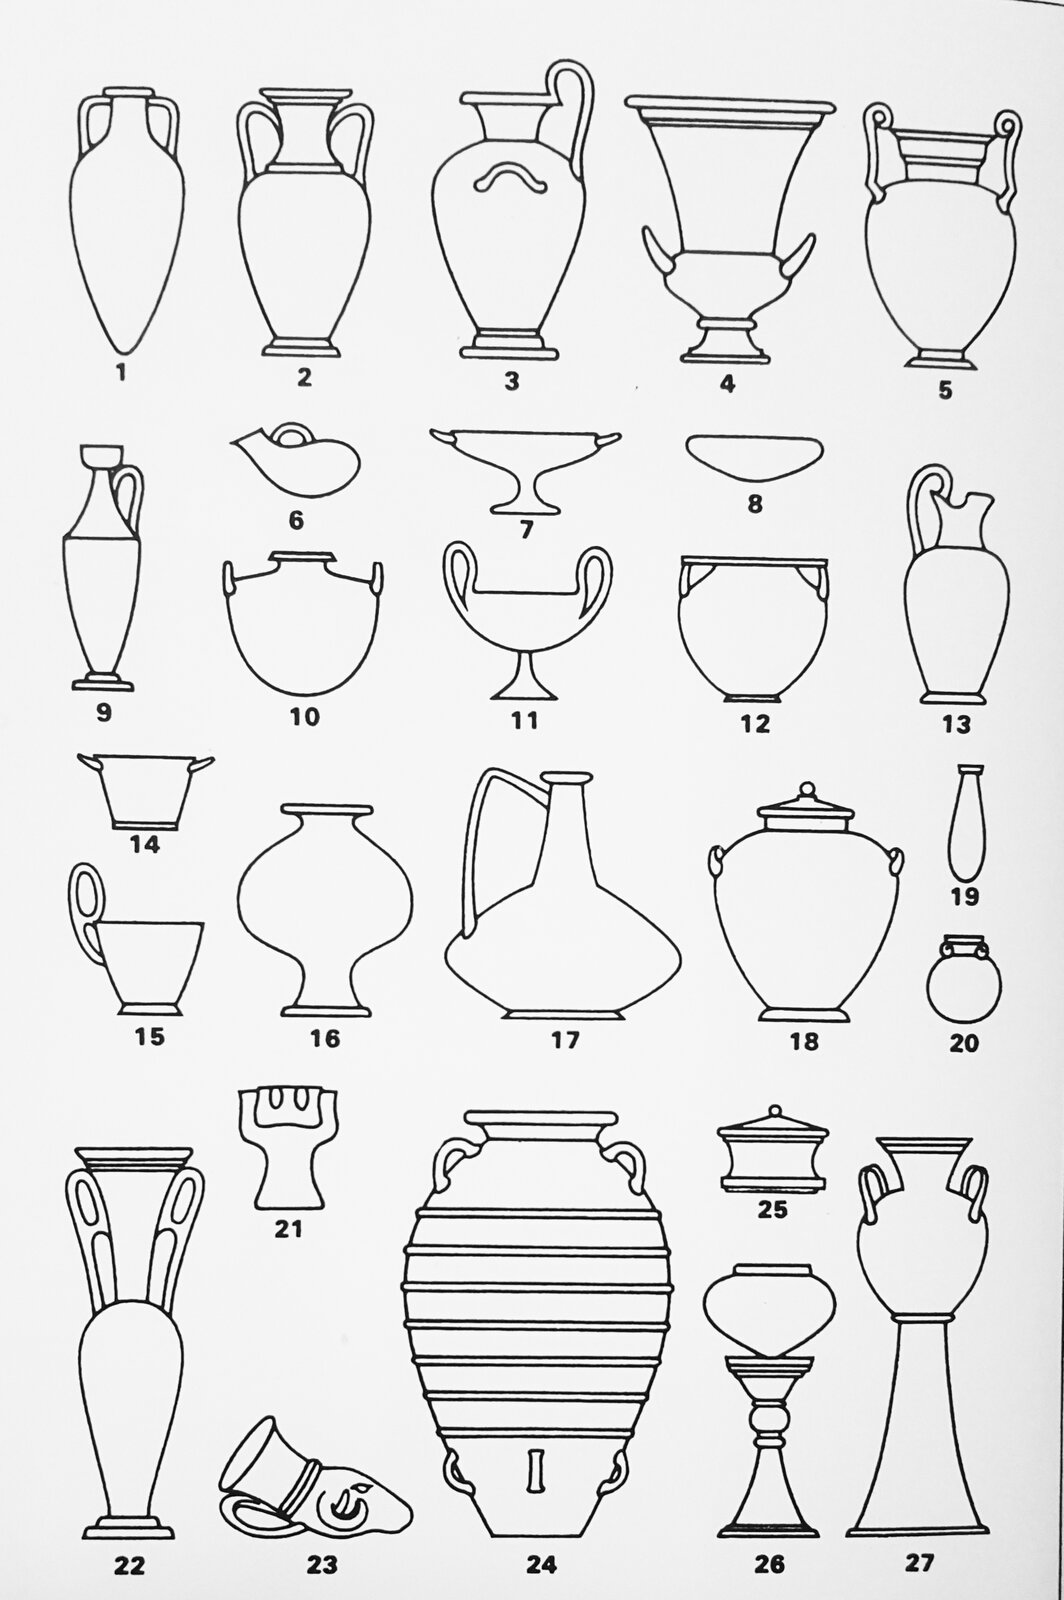 Ilustracja interaktywna przedstawia rodzaje starożytnych greckich waz. Wazy różnią się kształtem, posiadają różne uszy.